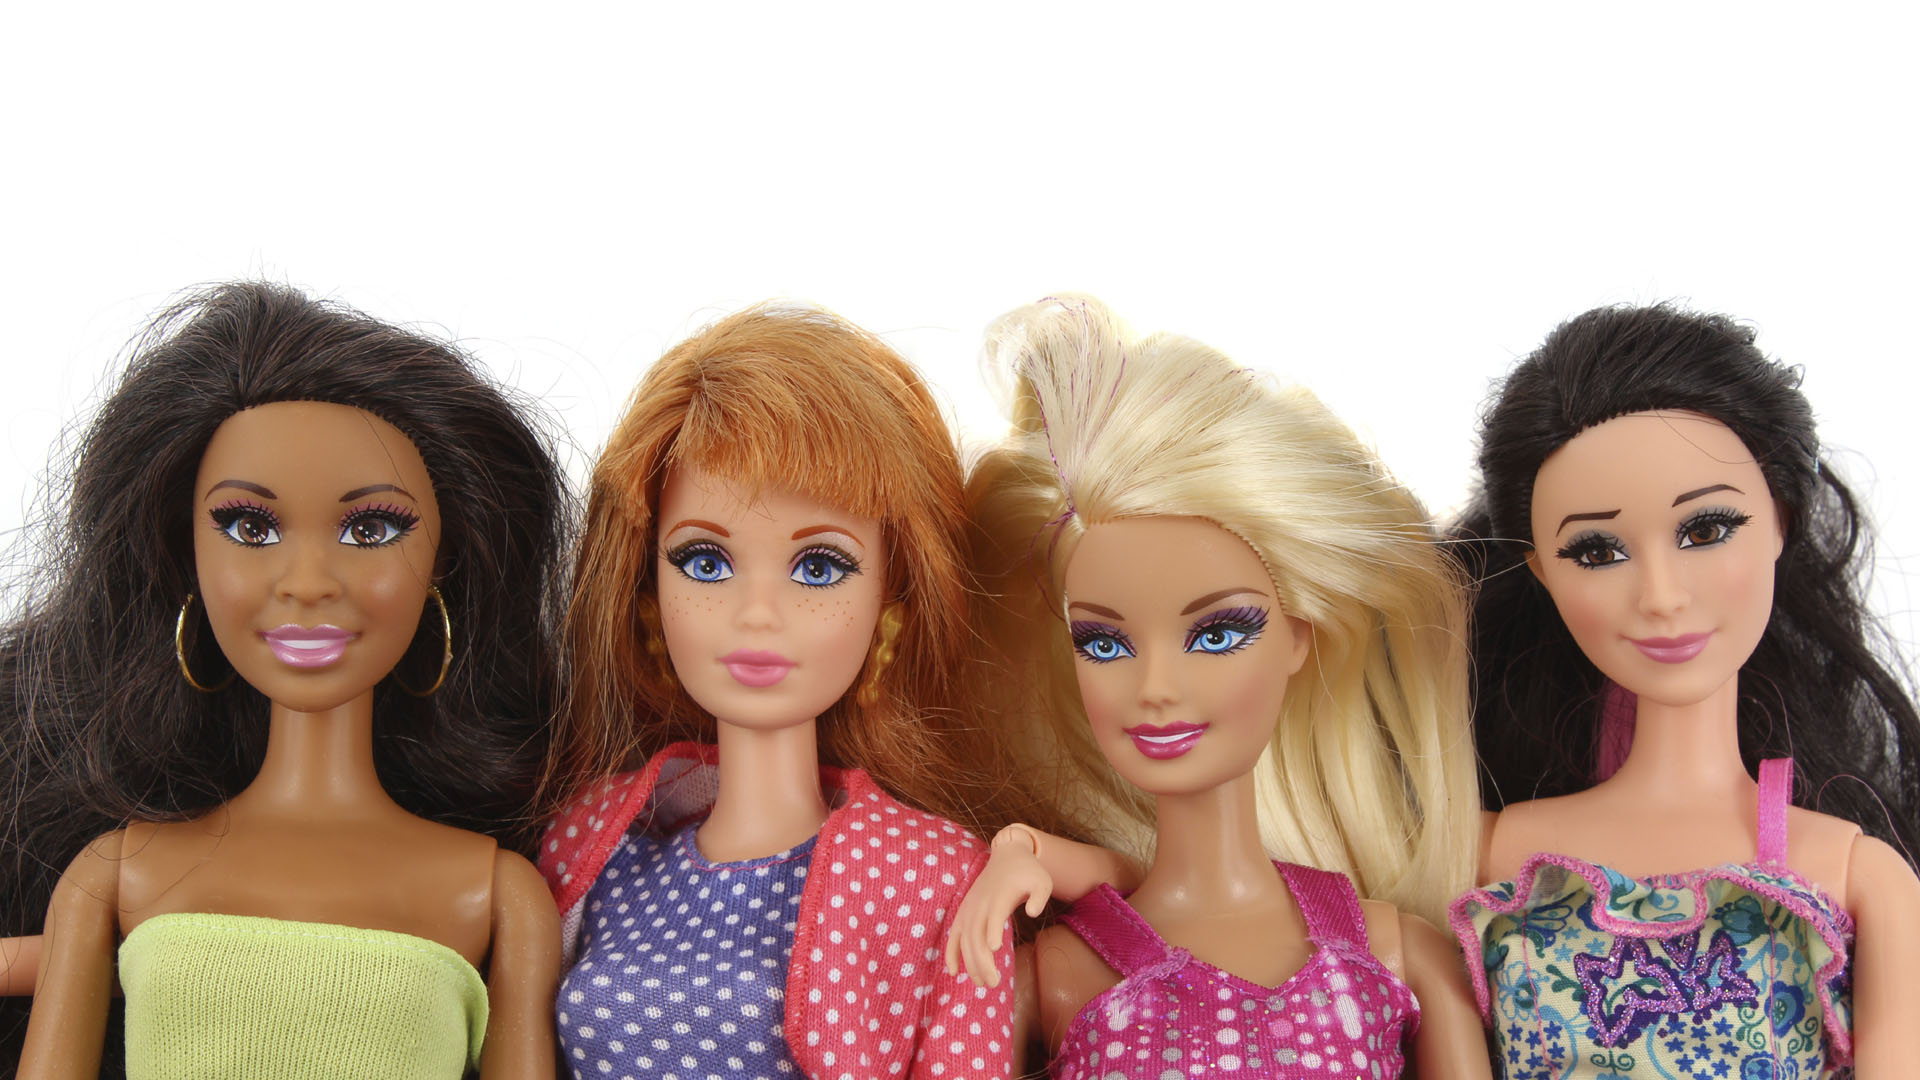 Mattel apuesta por la campaña "Sé lo que quieras ser" para aumentar las ventas de la muñeca